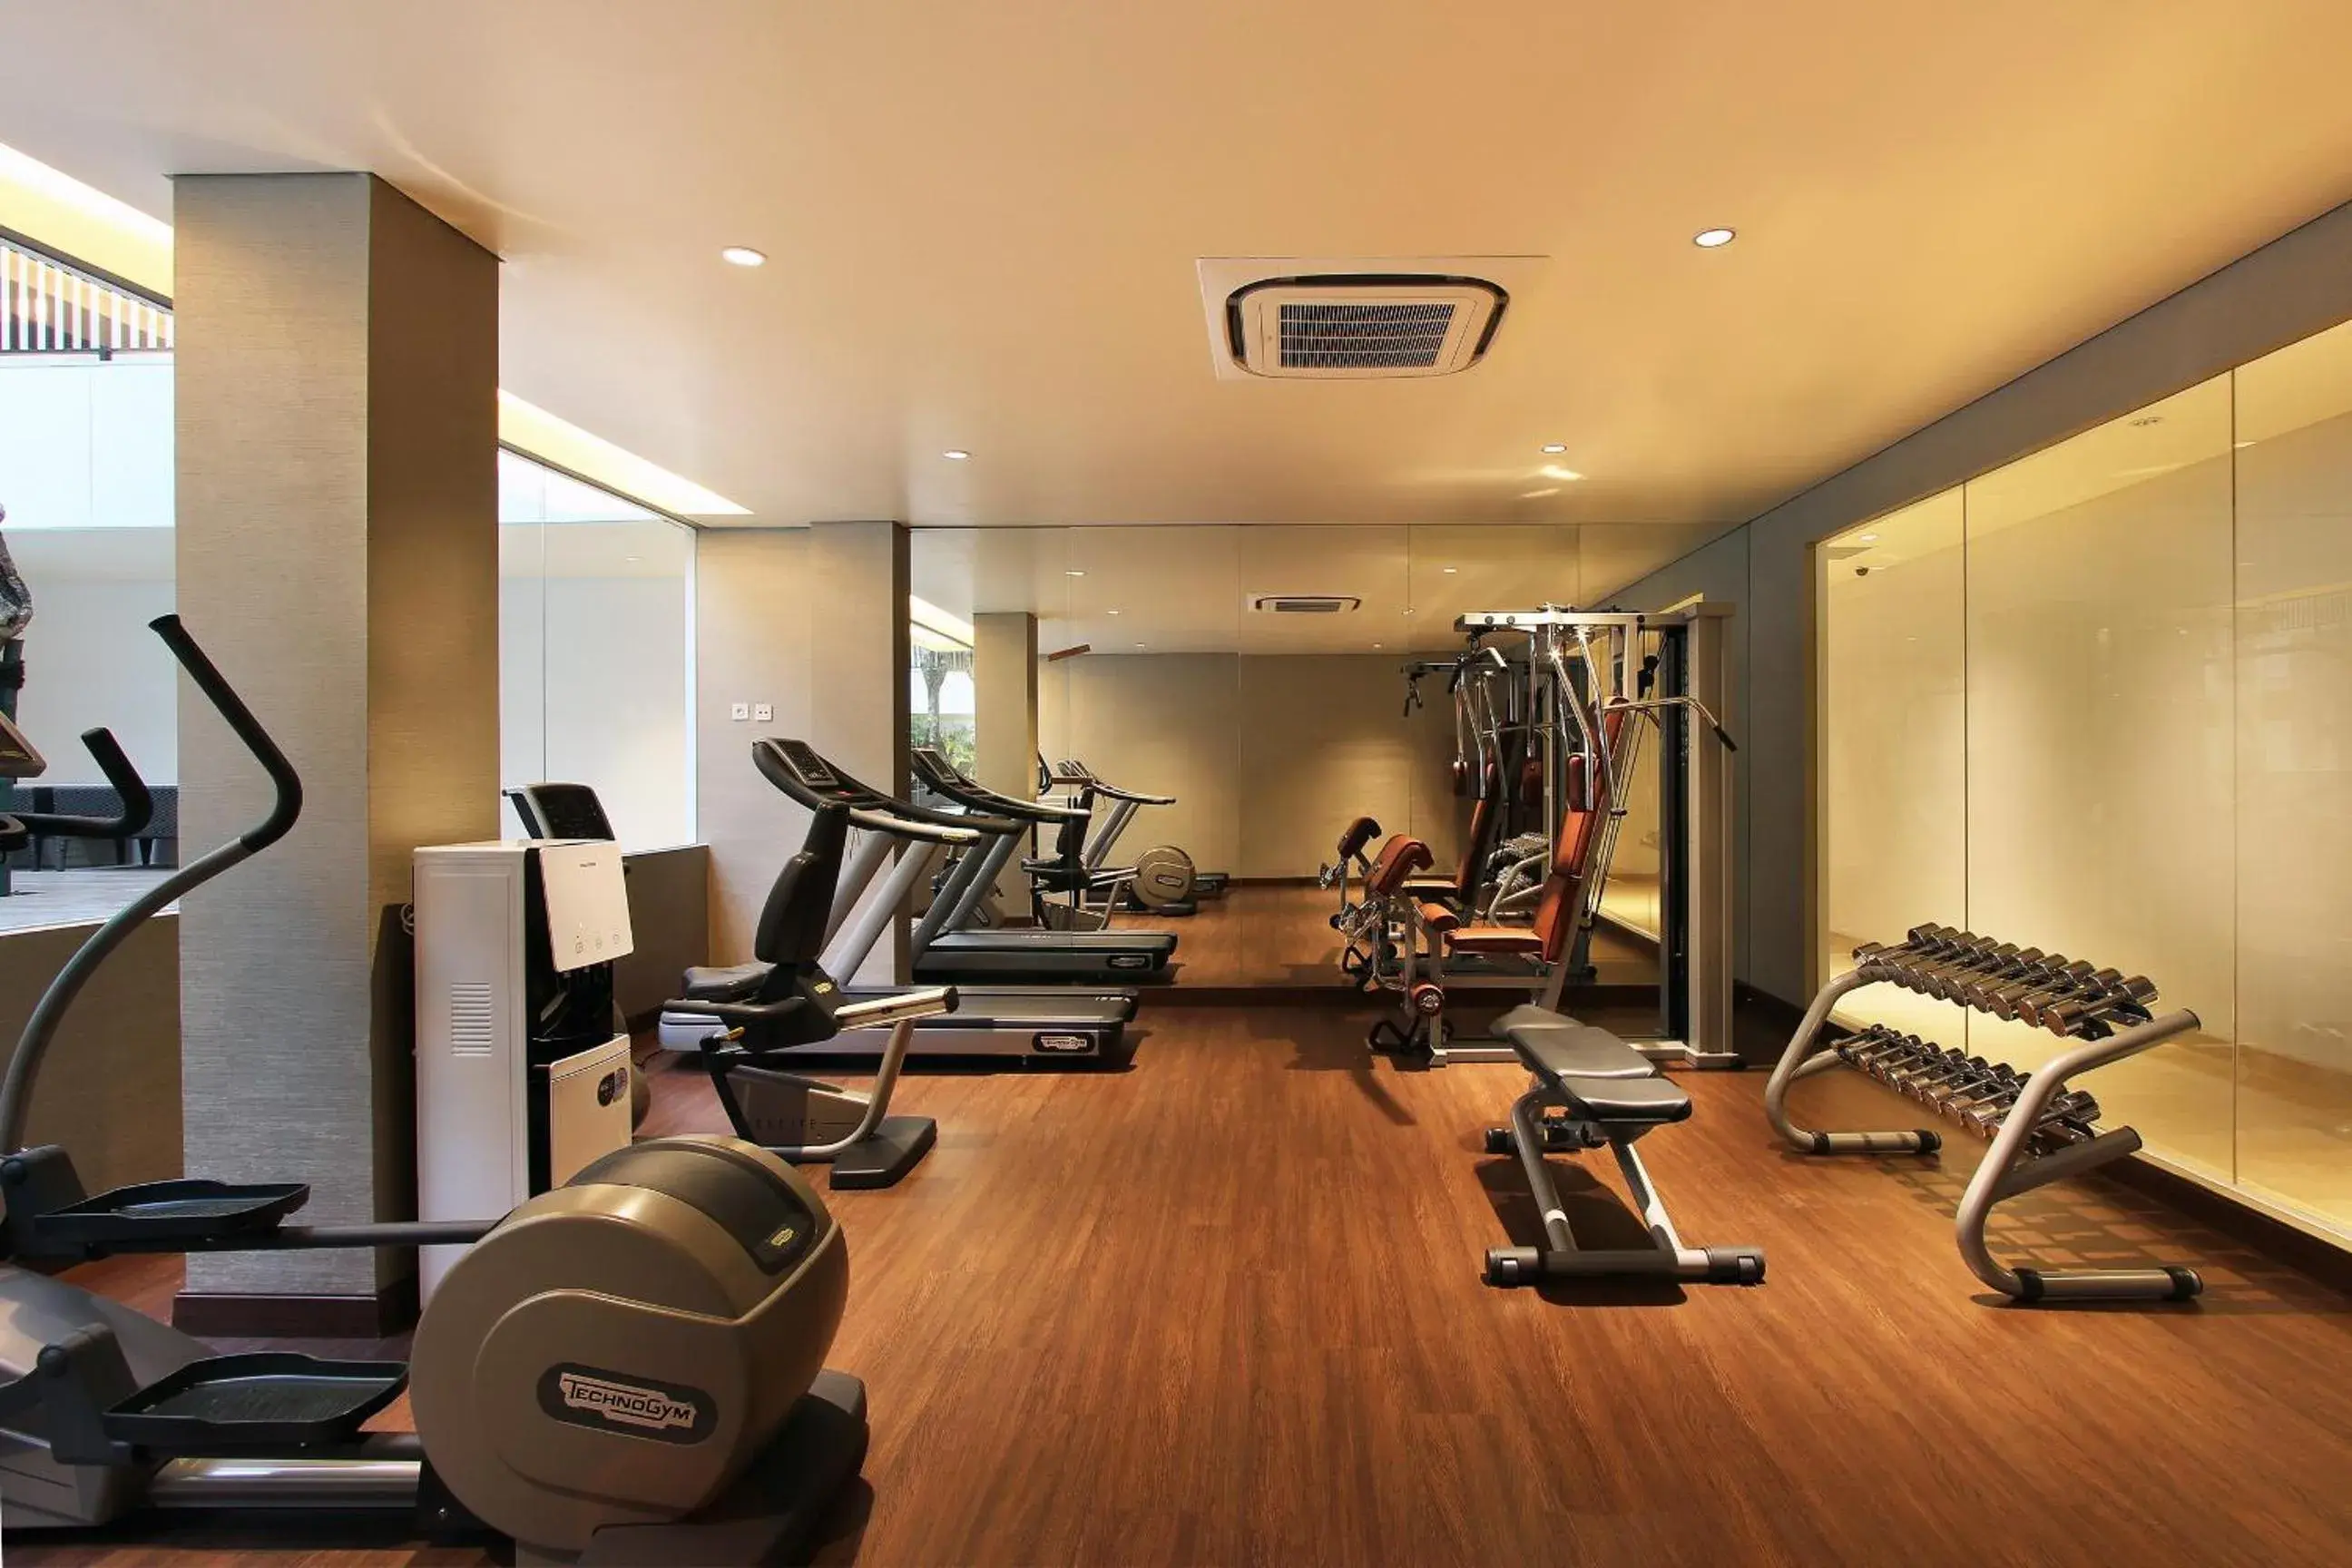 Fitness centre/facilities, Fitness Center/Facilities in Dwijaya House of Pakubuwono